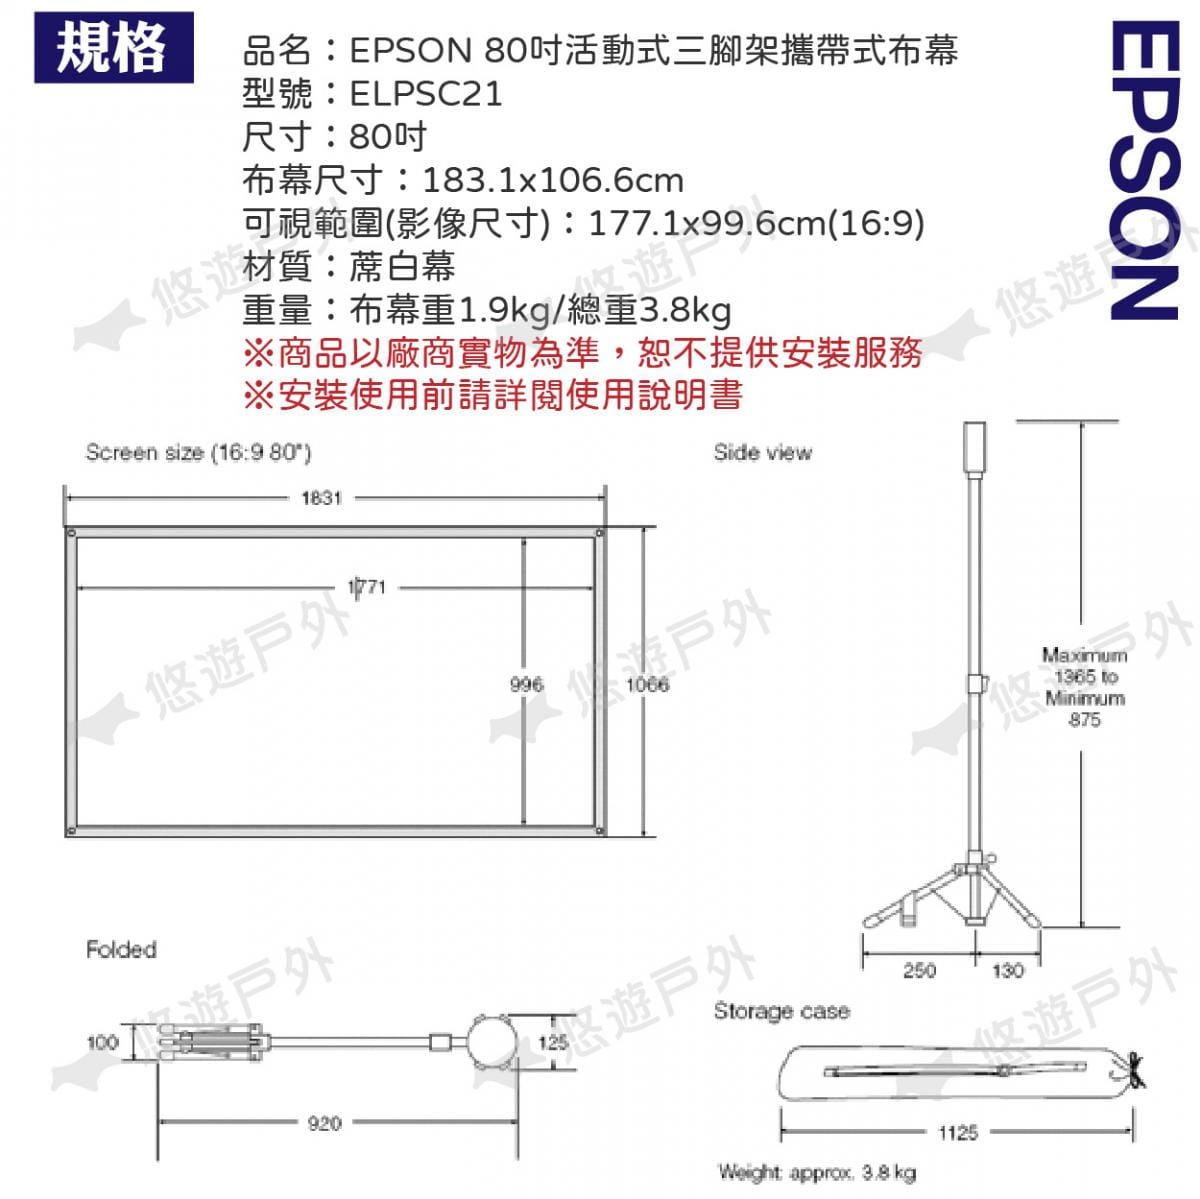 【EPSON】80吋活動式三腳架攜帶式布幕 ELPSC21 悠遊戶外 6